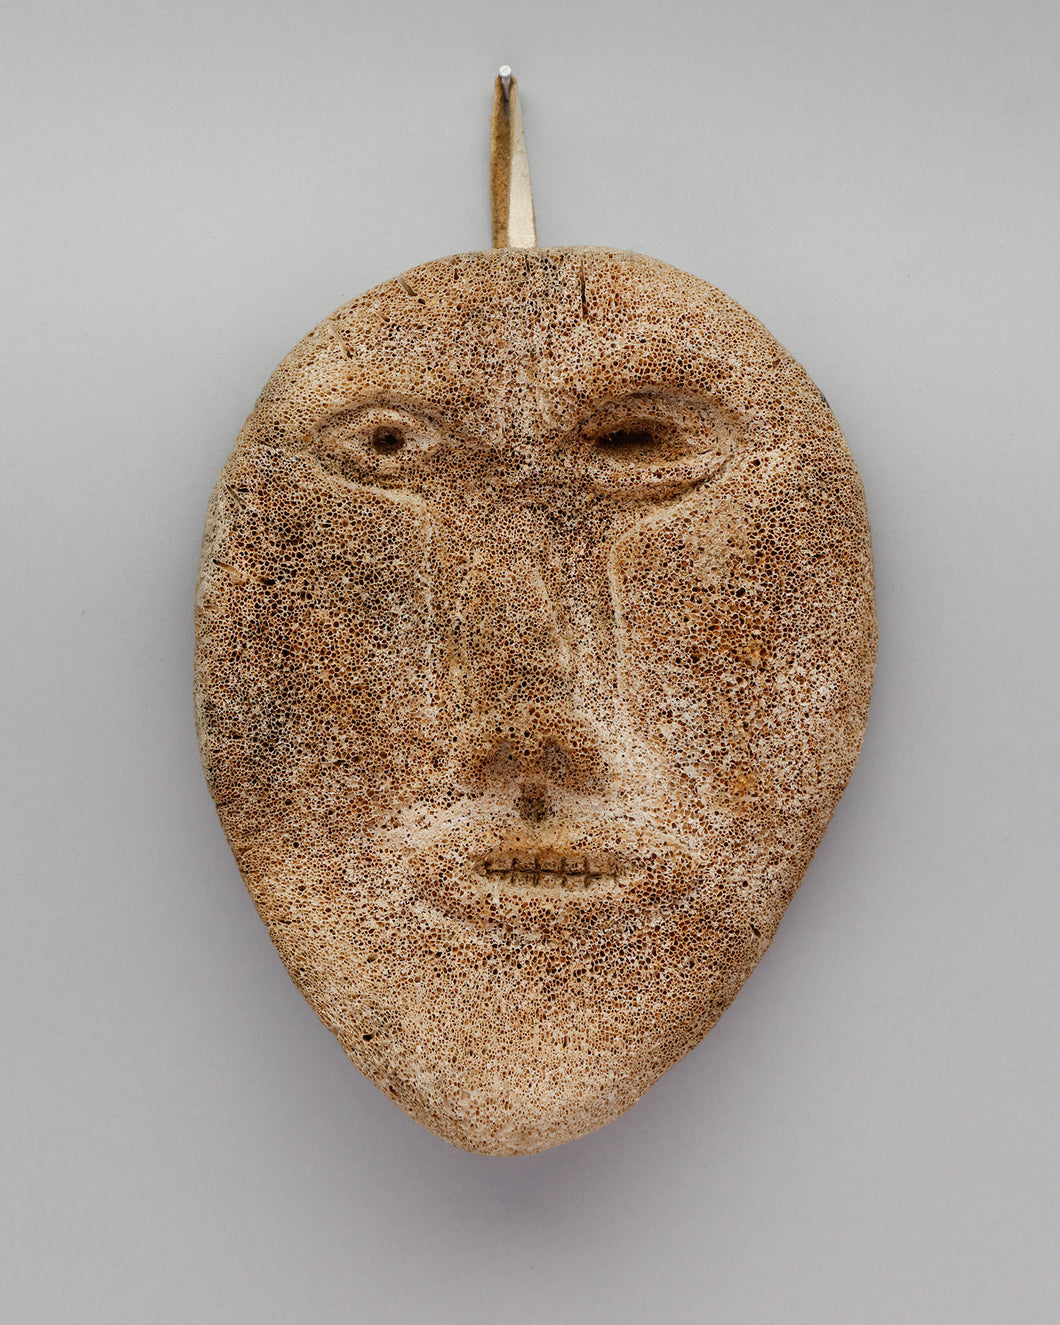 Whalebone Mask, Inupiaq Culture